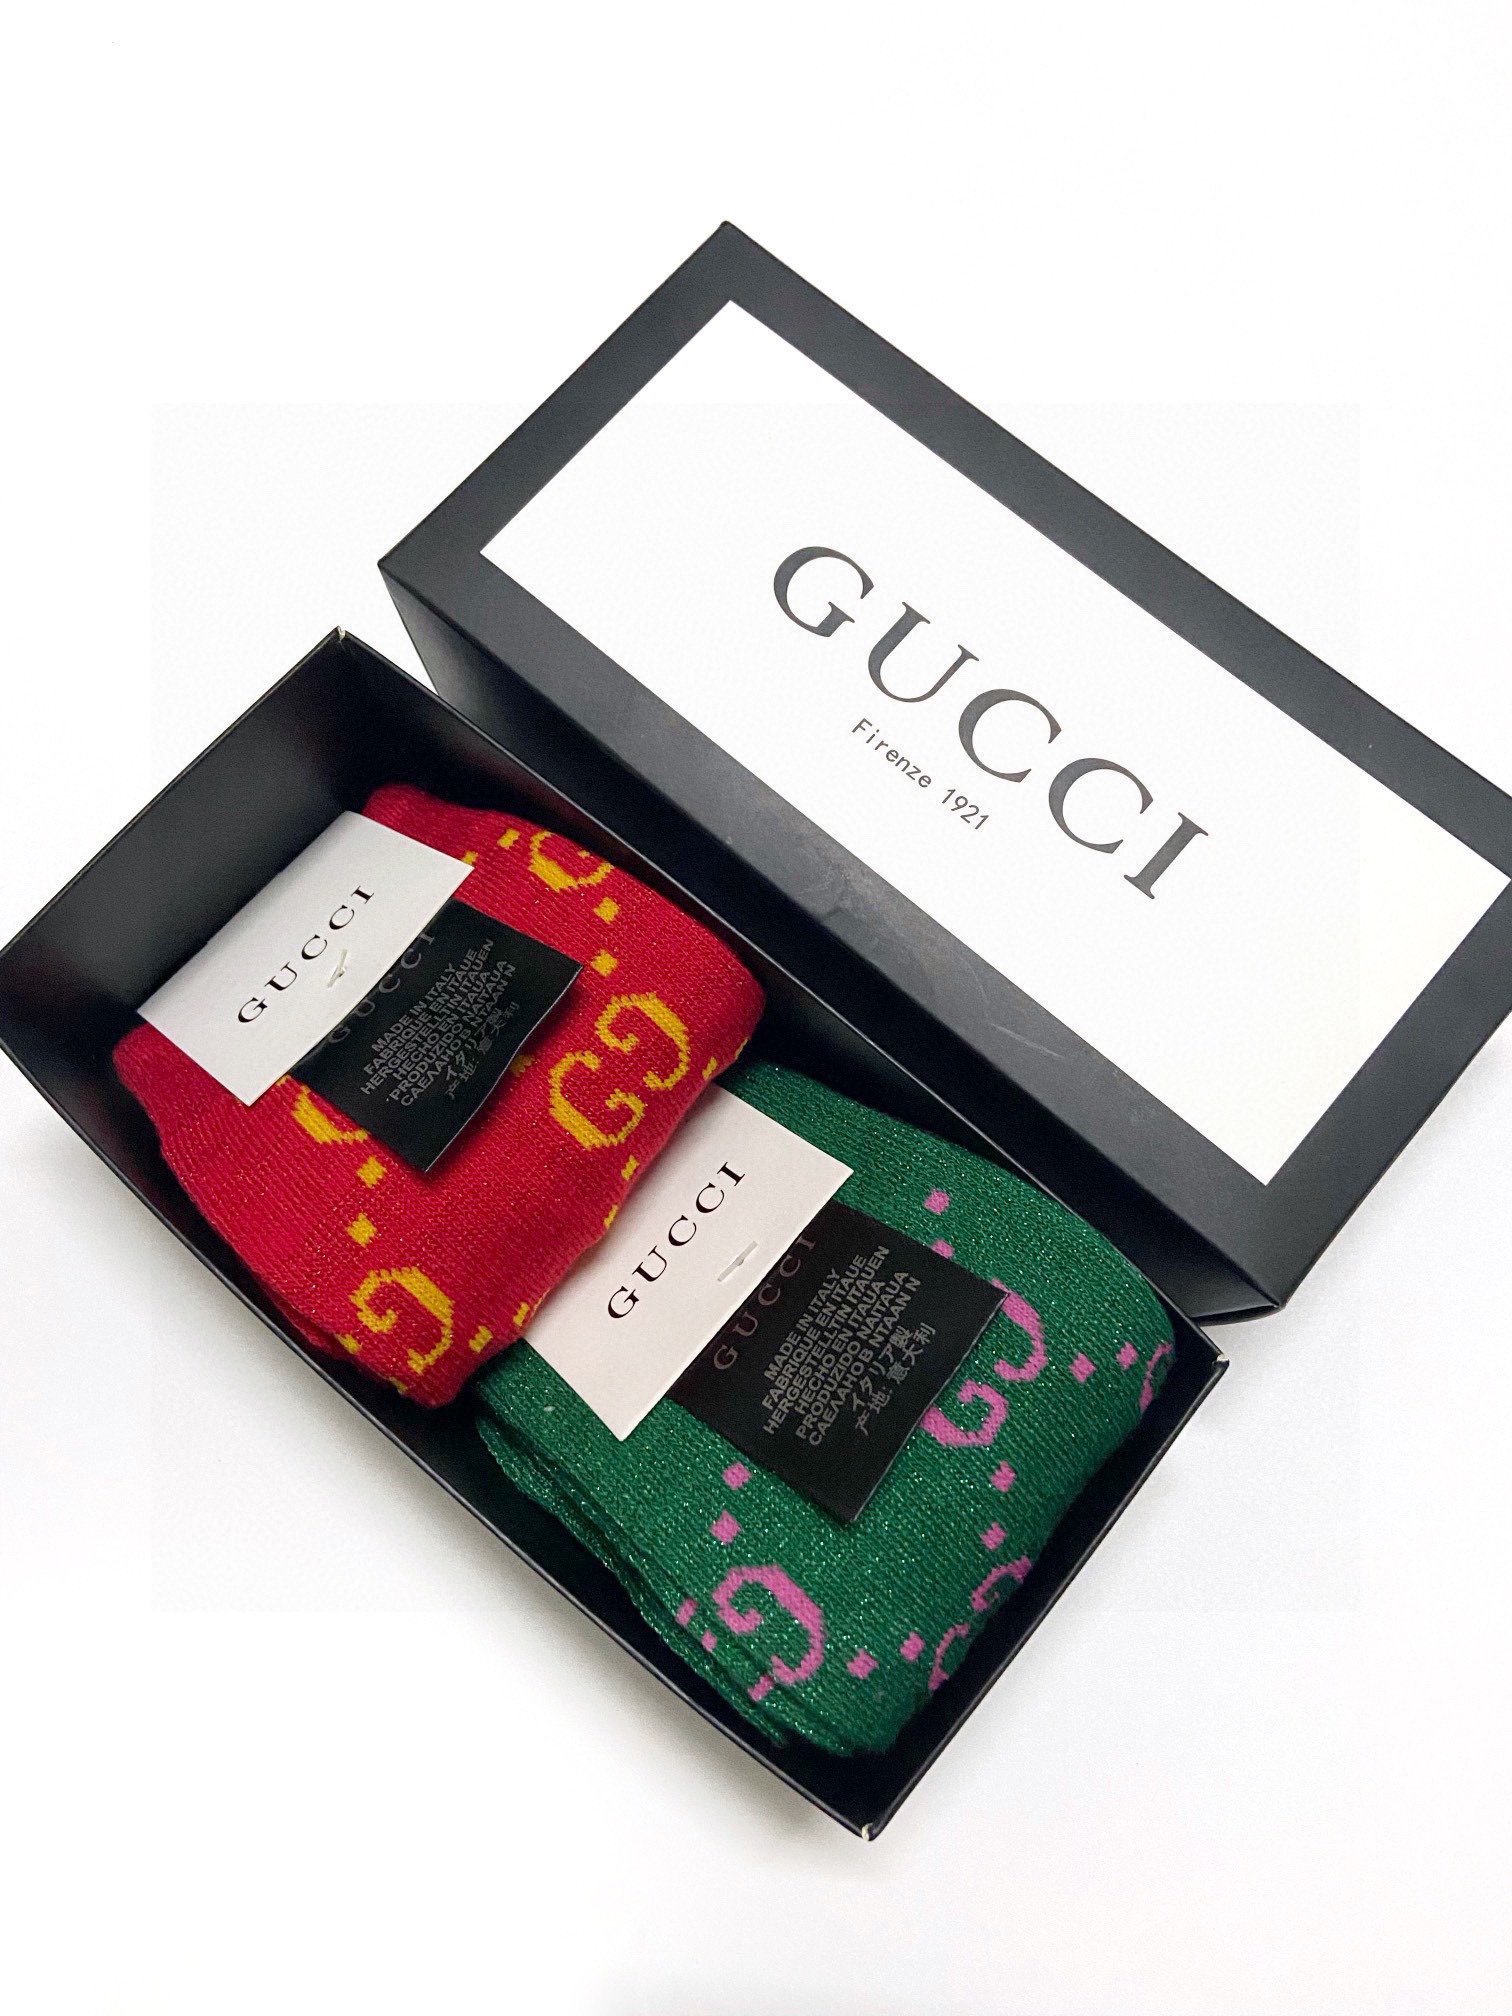 配包装一盒2双Gucci古奇爆款金银丝长筒袜中筒袜超级火爆小腿袜双针针织混纺金银丝材质超完美结合款式经典